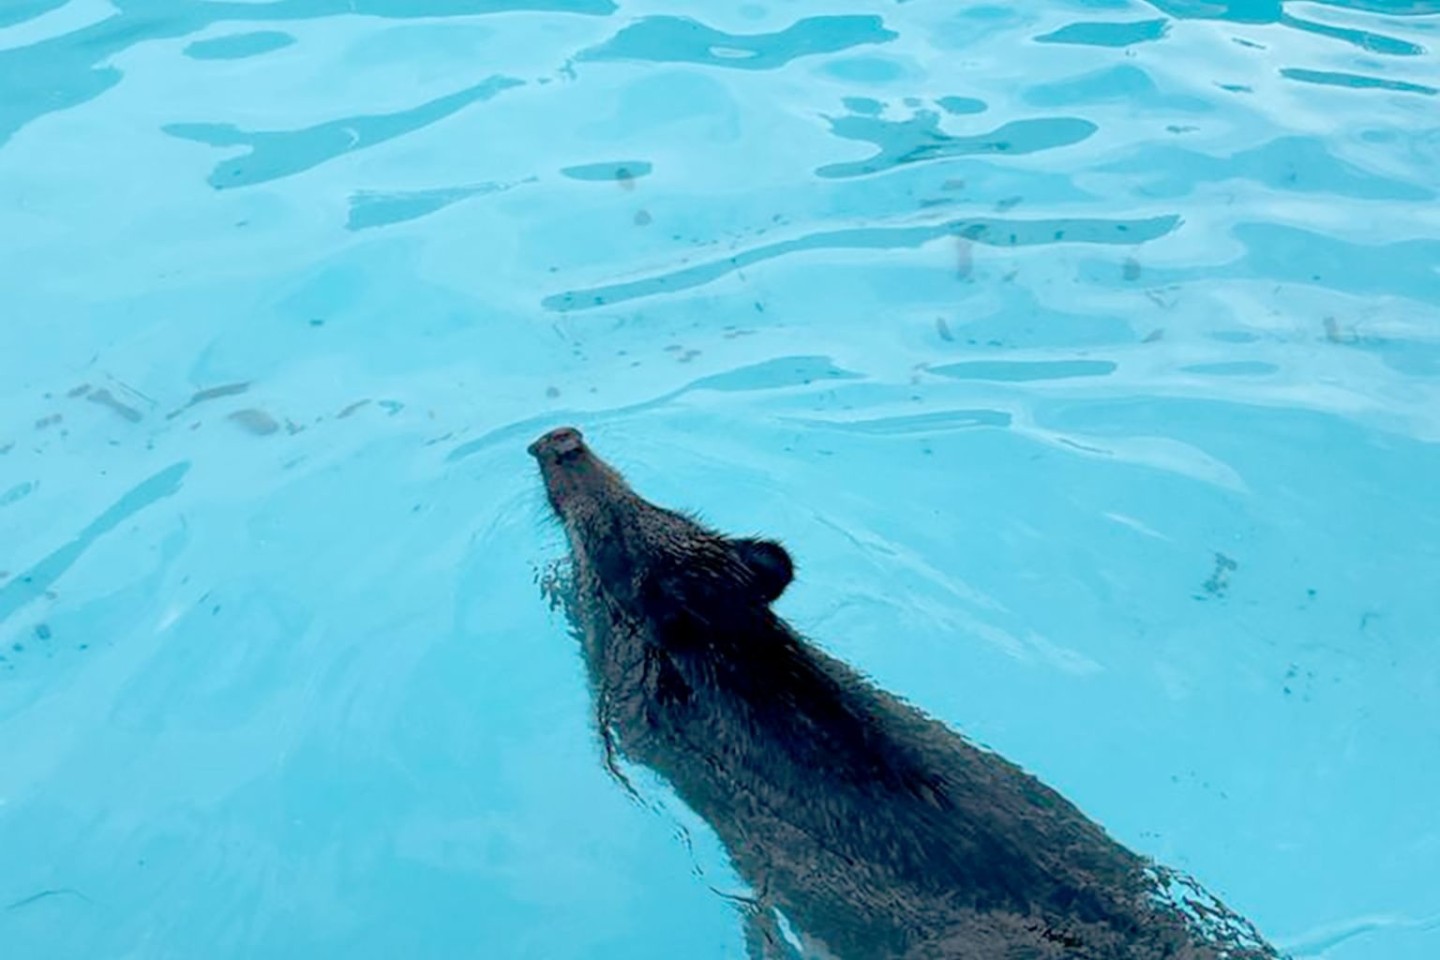 Abkühlung vonnöten: Ein Wildschwein schwimmt in einem Swimmingpool.